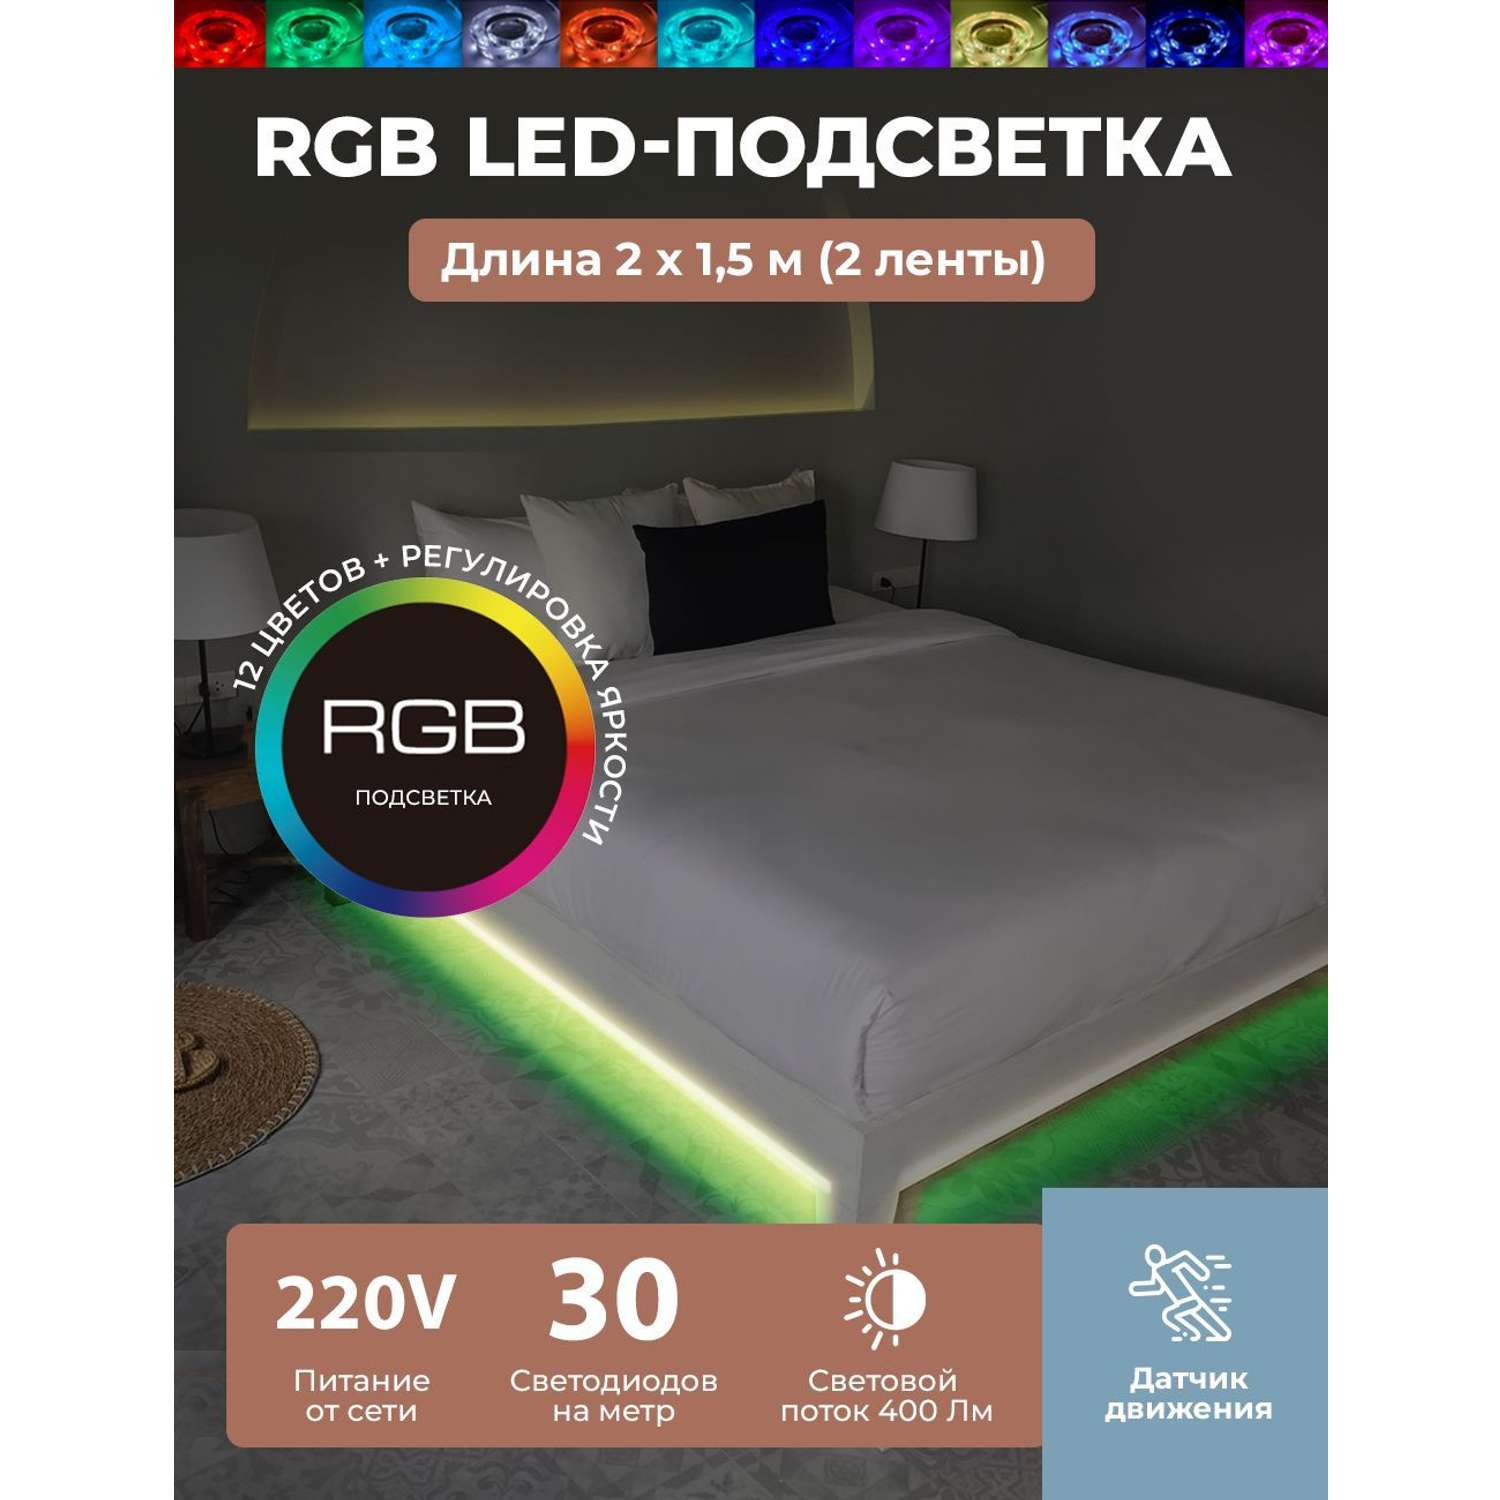 LED подсветка ночник ГЕЛЕОС светодиодная лента ЦВЕТНАЯ для двуспальной кровати 2x1.5м комплект 220V - фото 2